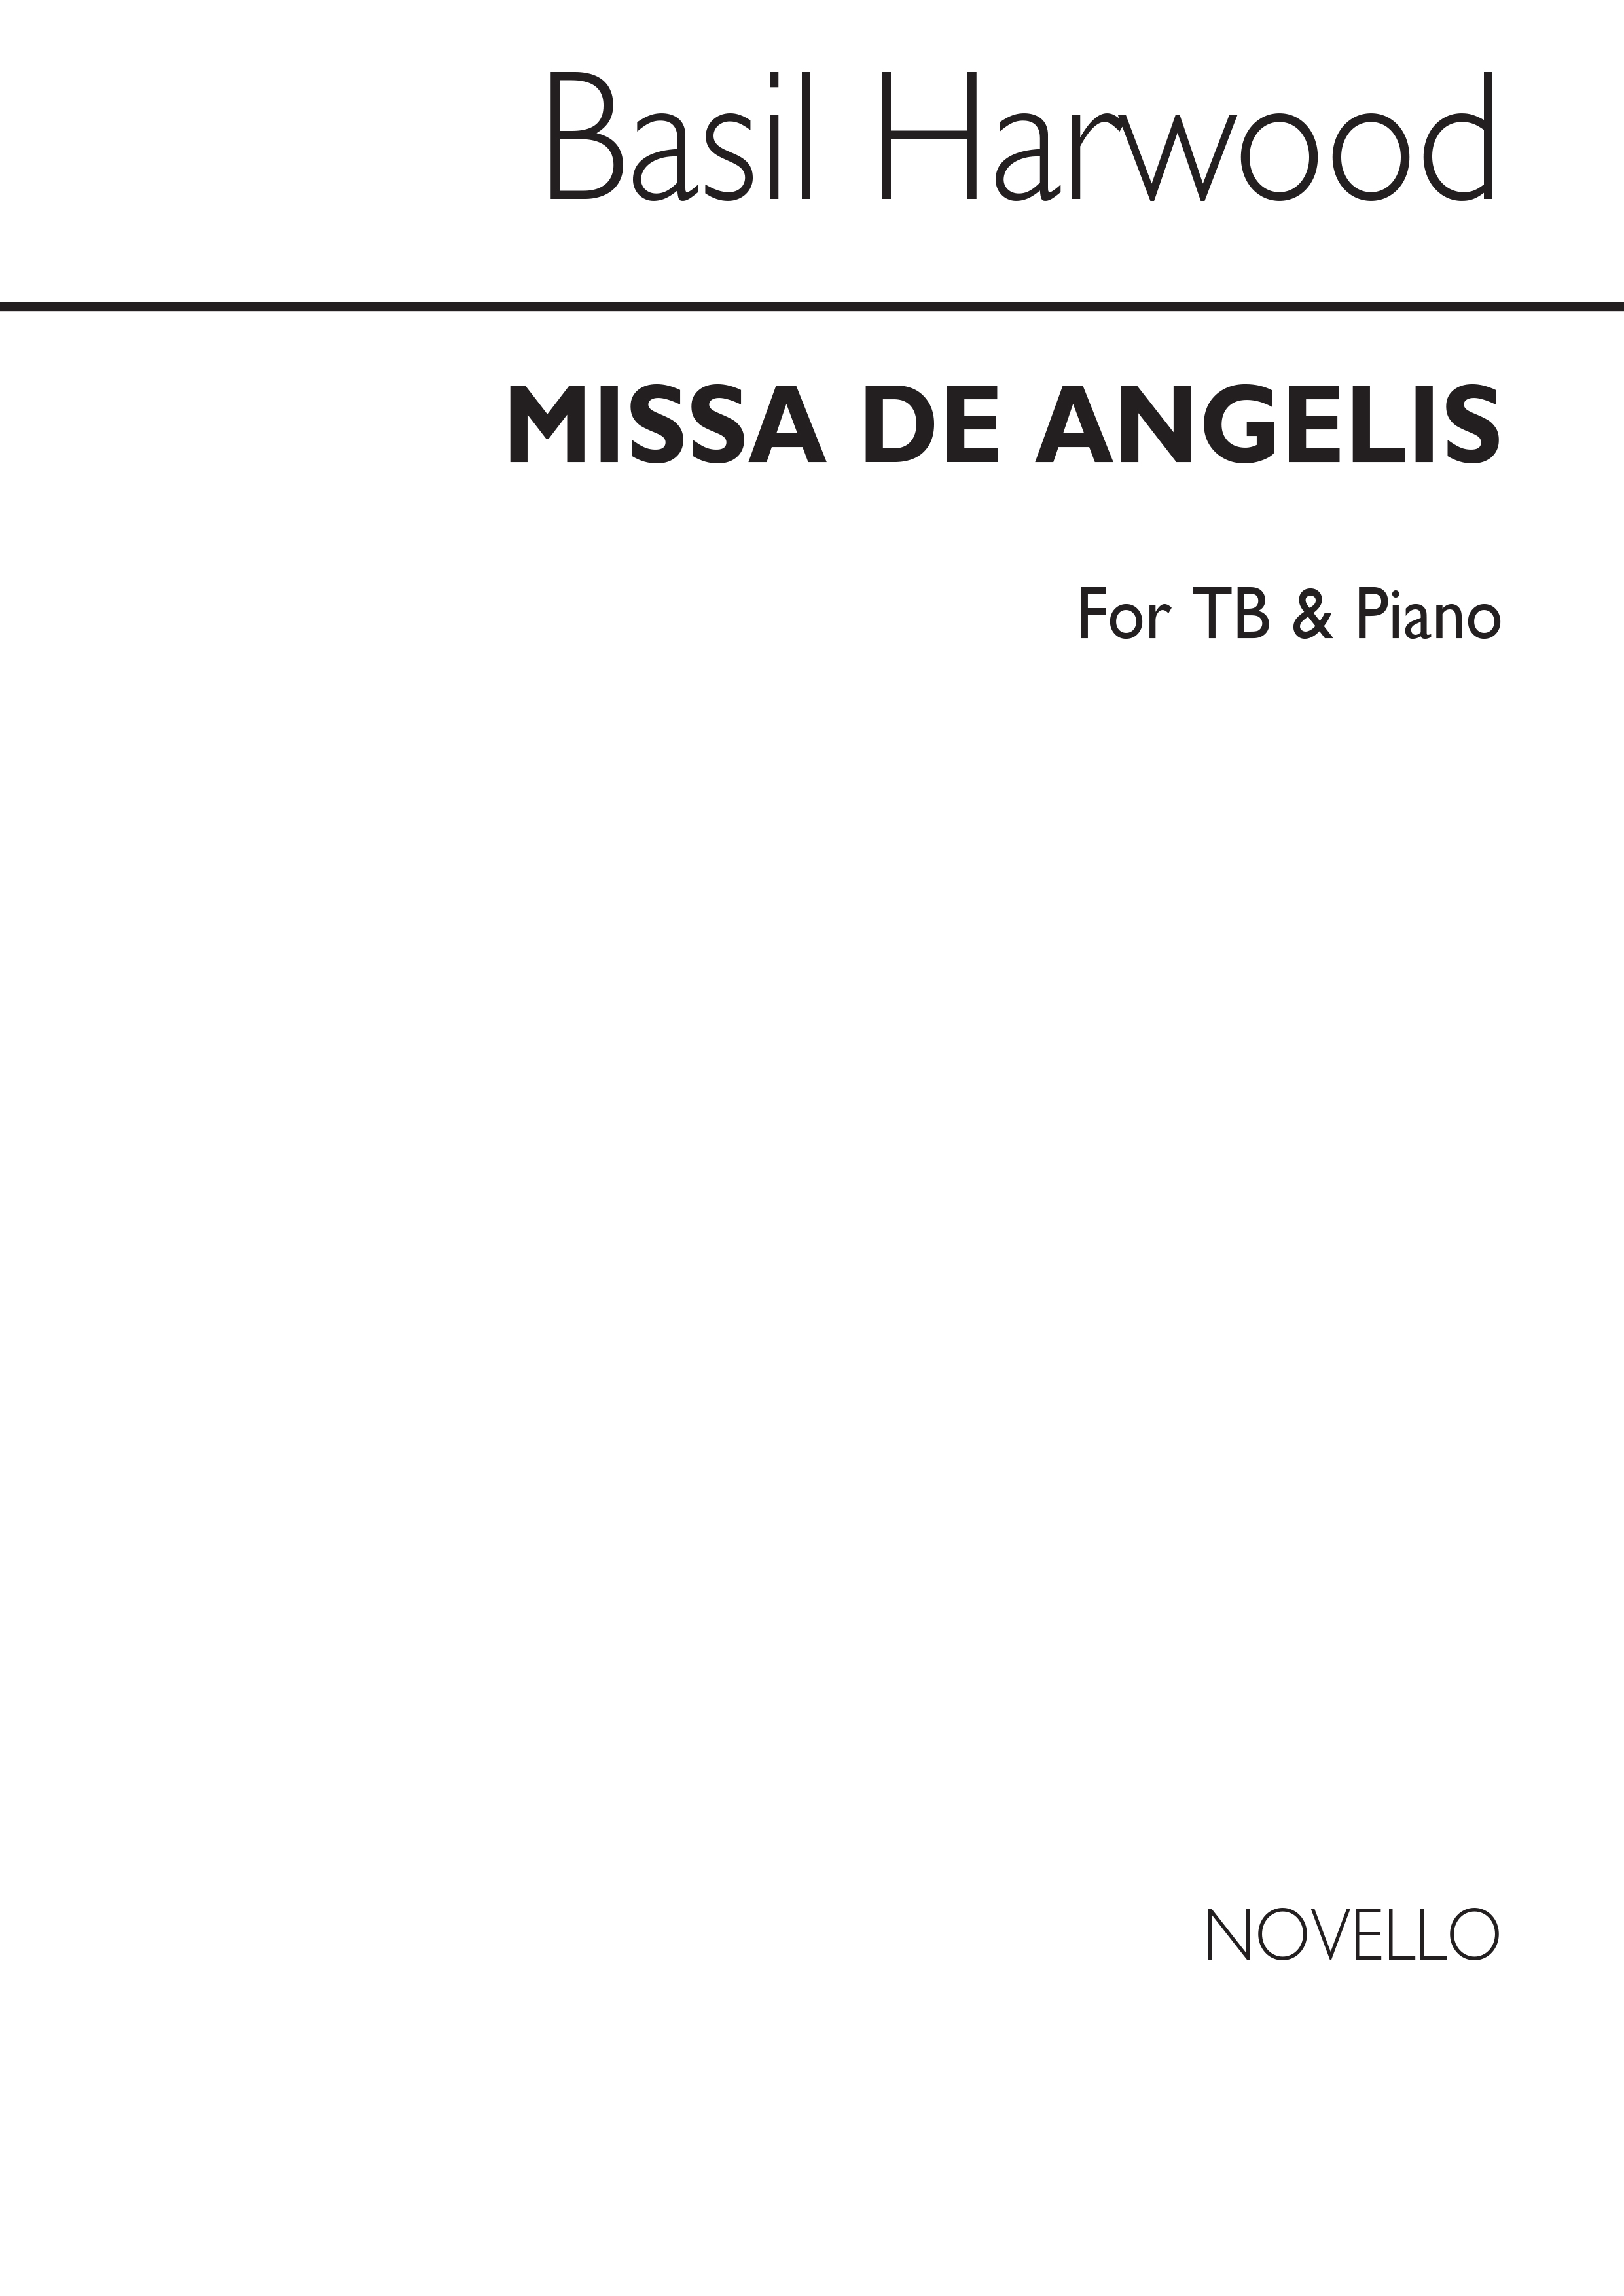 Basil Harwood: Missa De Angelis